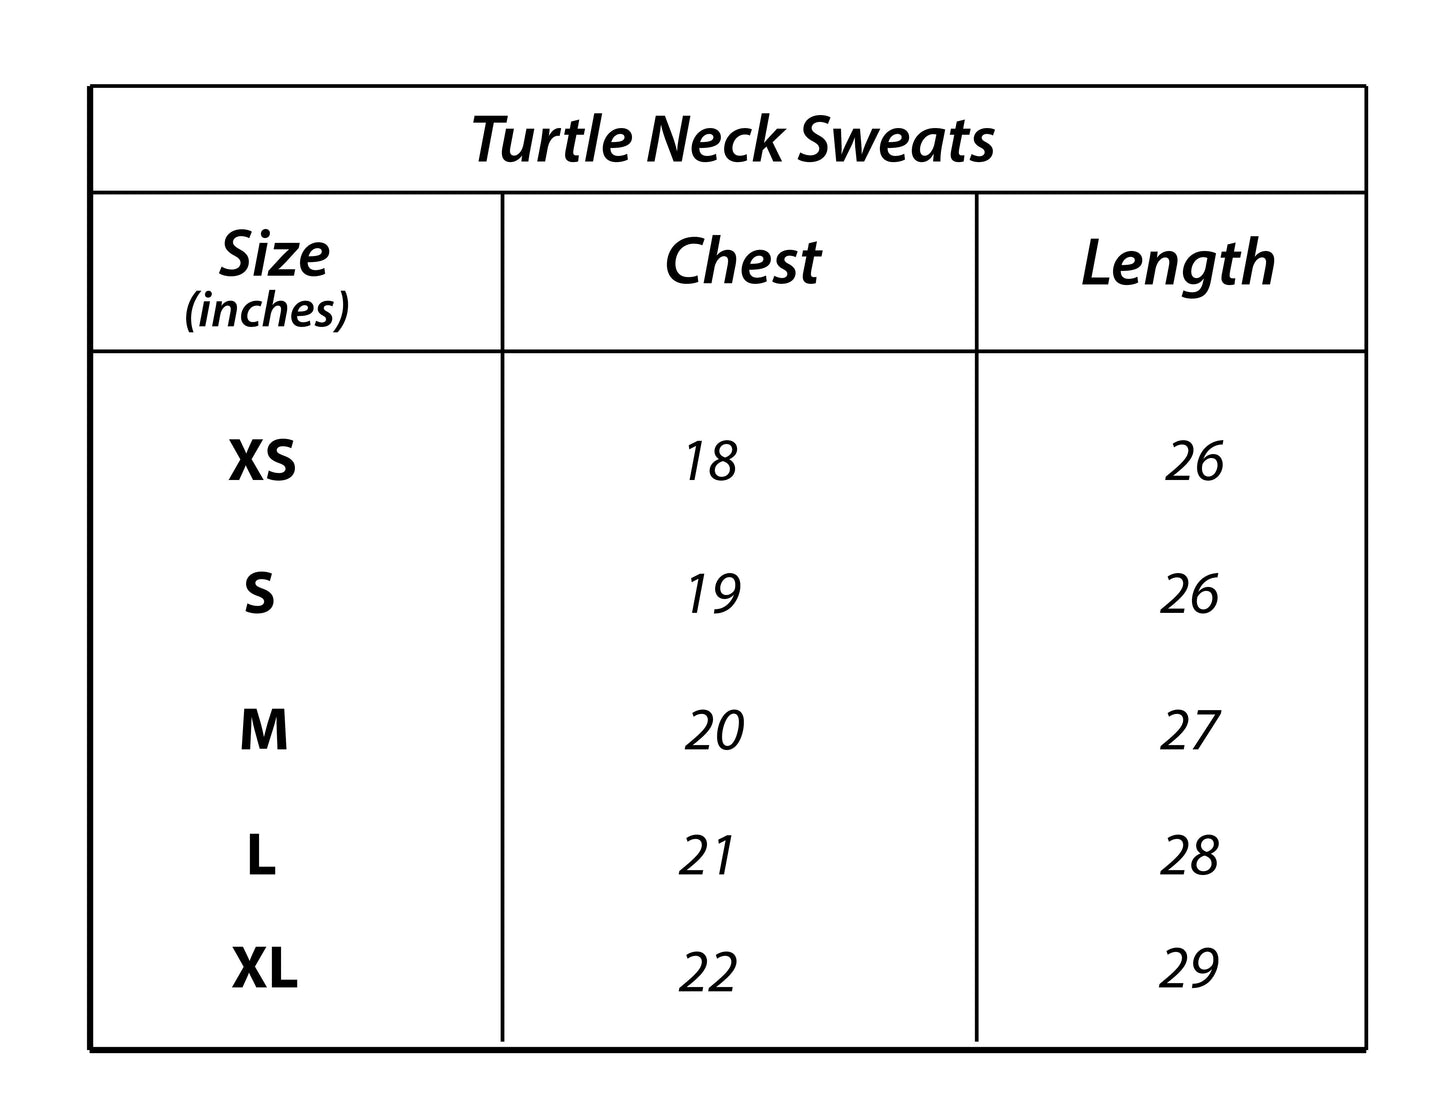 Z.A.R.A Premium Turtle Neck Sweats (Charcoal Black)